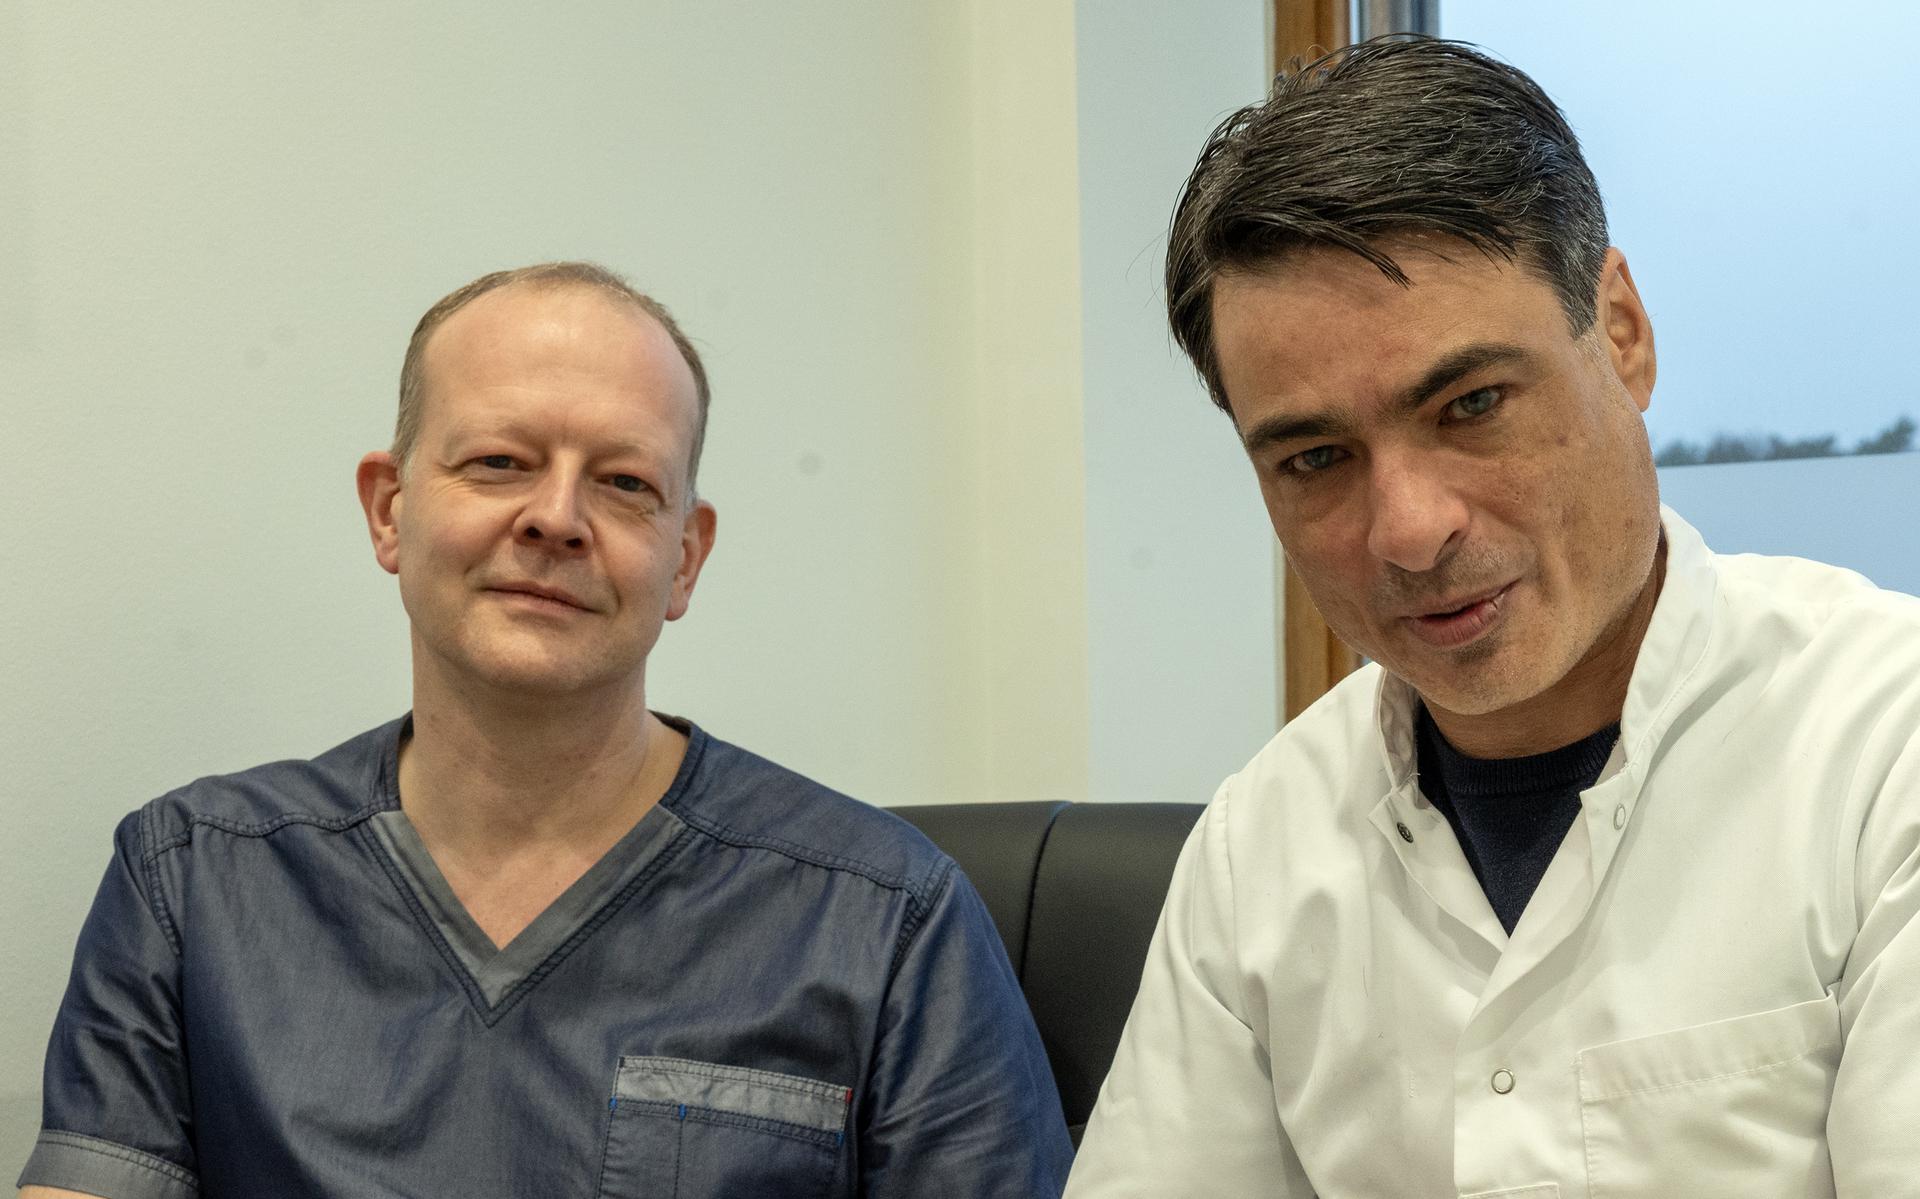 Artsen Jurjen en Mark helpen in Emmen patiënten als Henri van extreme hoofdpijn af met botox. 'Ik had er geen vertrouwen in, maar ik heb mijn leven terug' - Dagblad van het Noorden